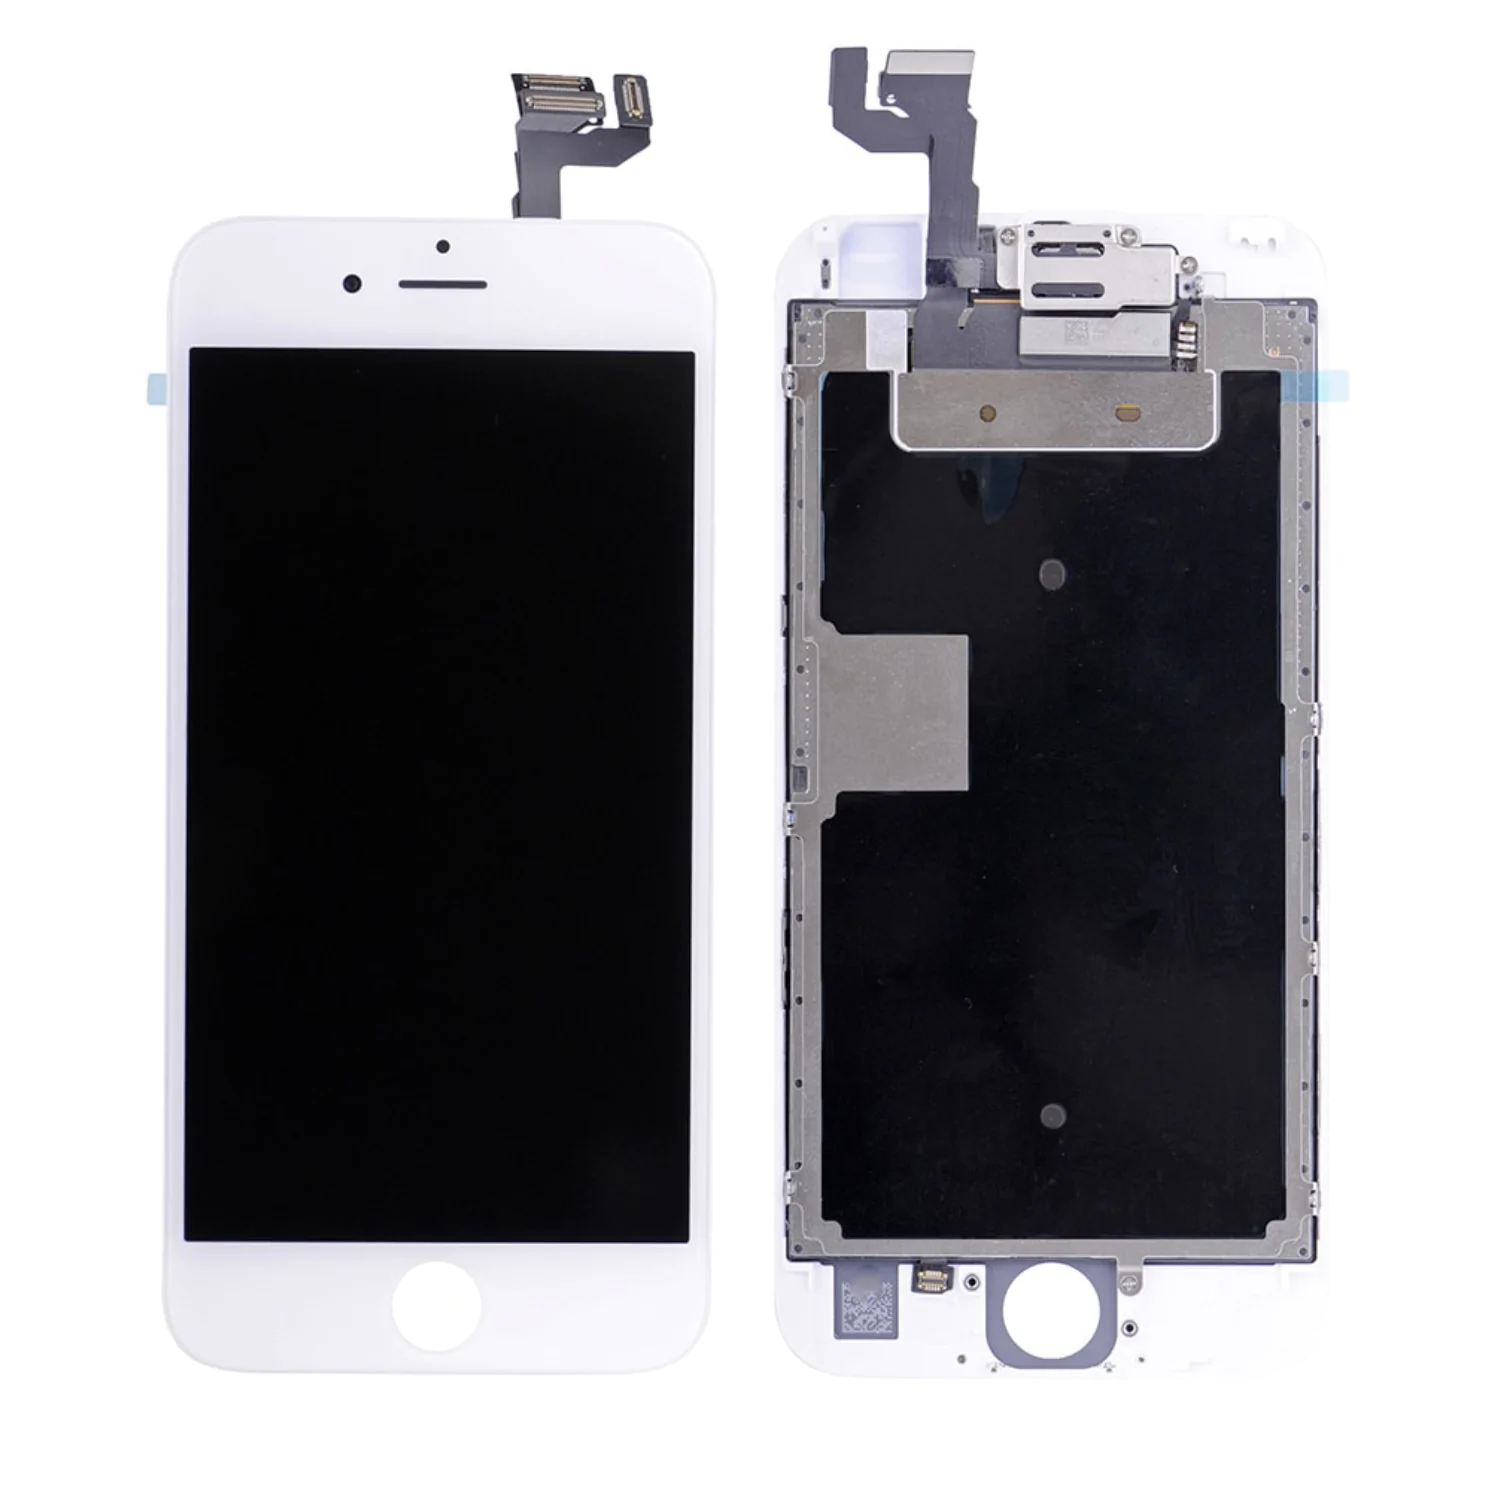 Display Originale Refurb Apple iPhone 6S Plus Bianco